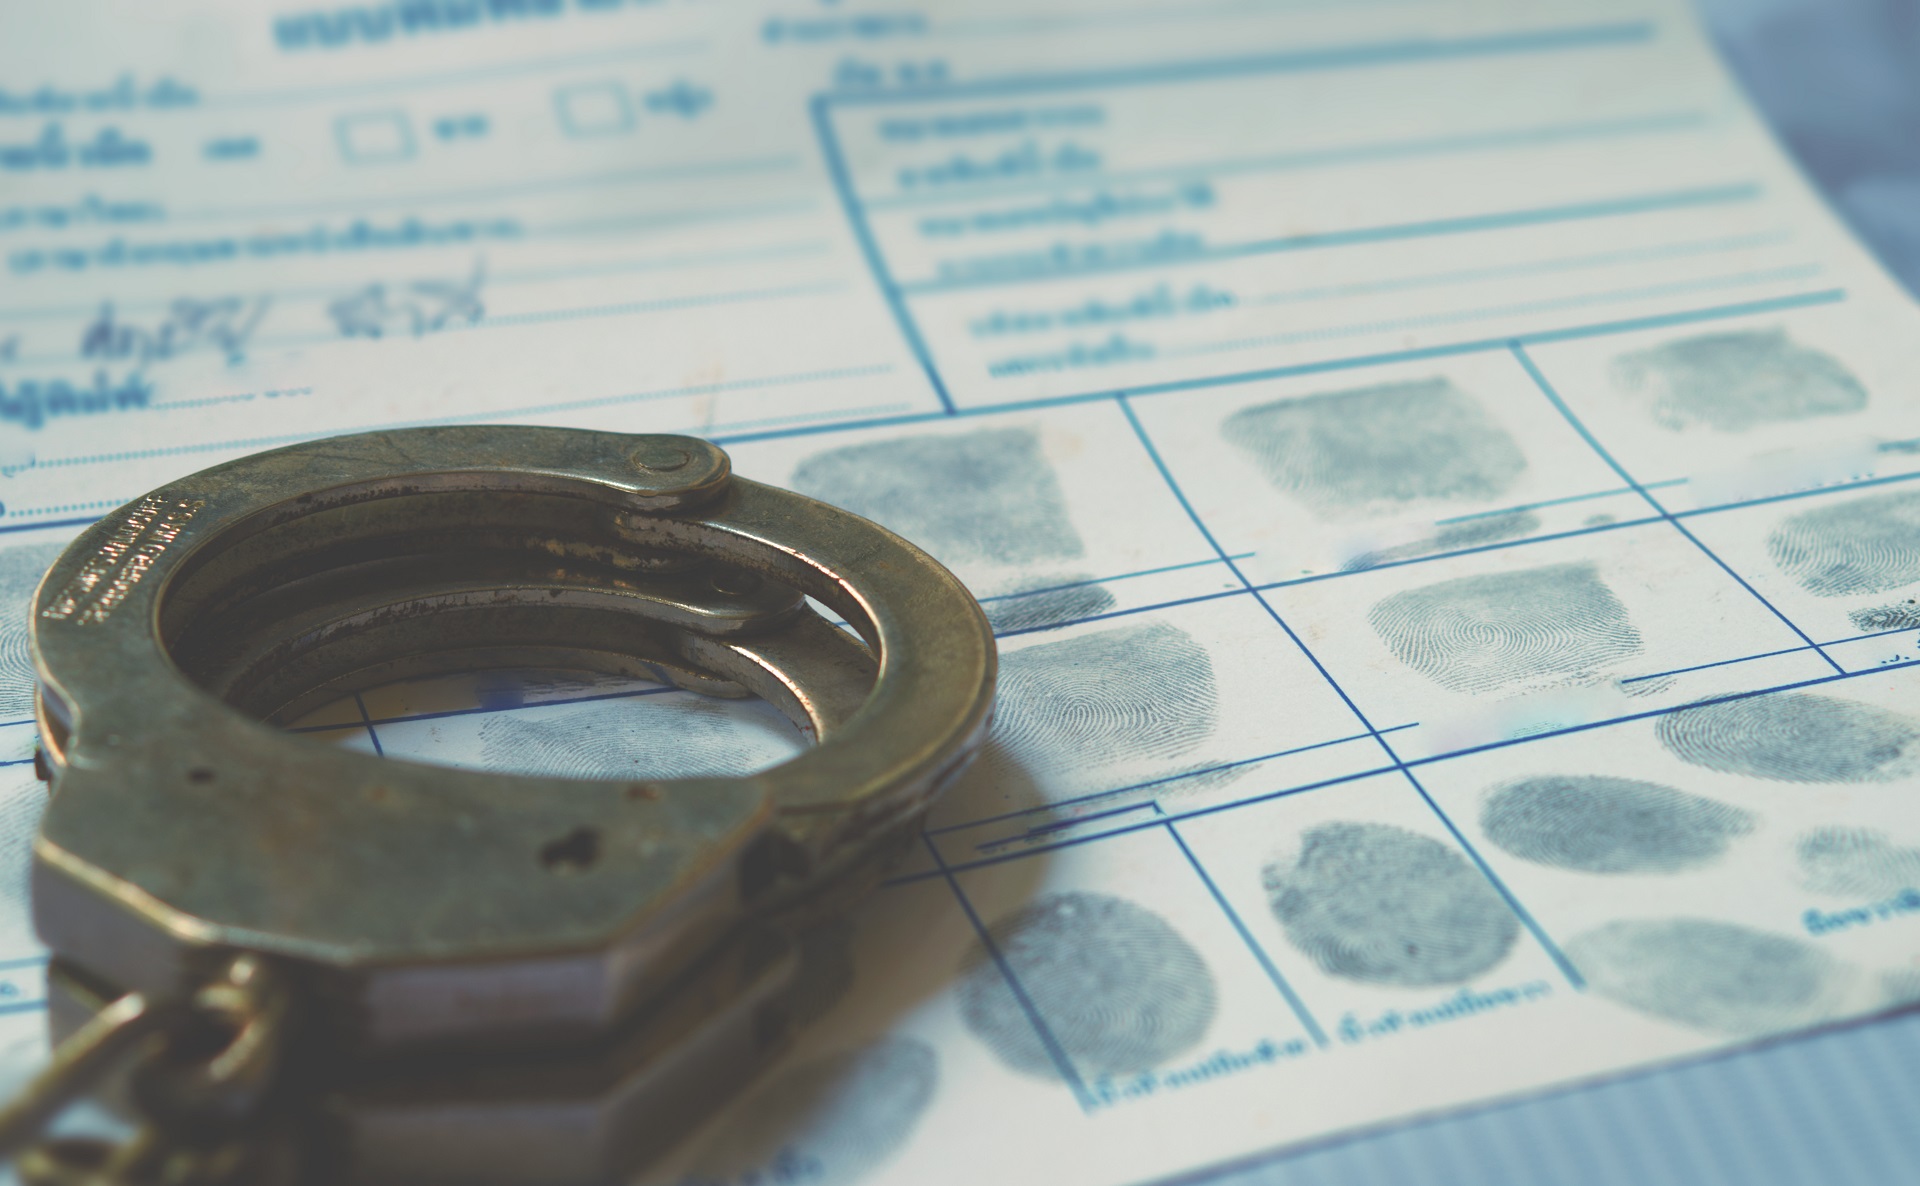 A pair of handcuffs and a fingerprint on a paper | DUI Homicide Defense Lawyer | Wegman & Levin